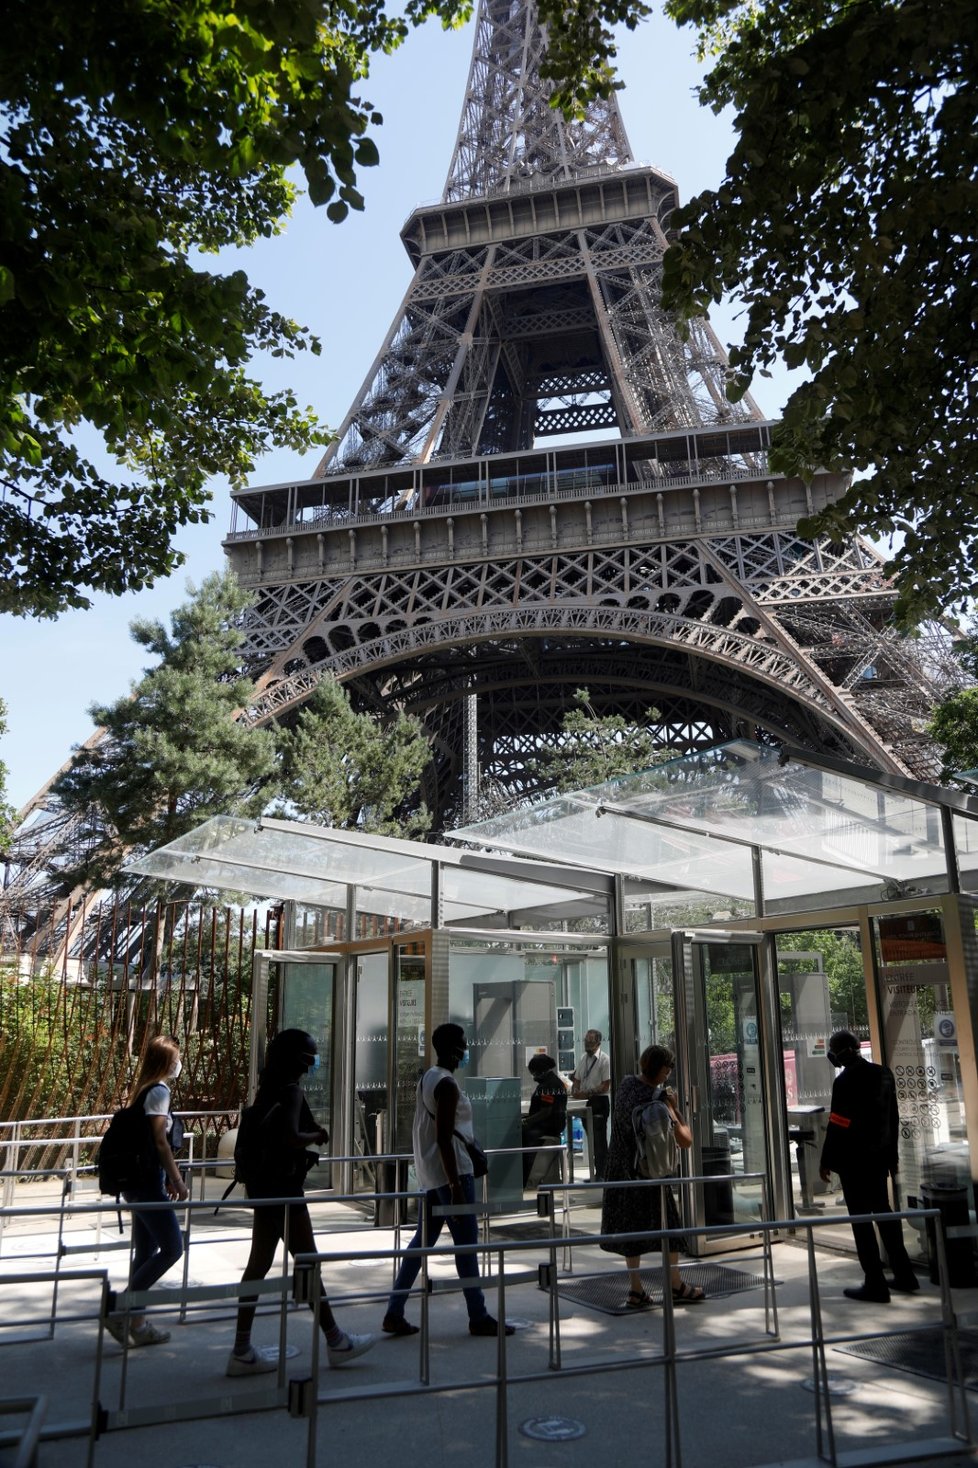 Eiffelova věž se po třech měsících otevřela po uzavření v důsledku protikoronavirových opatření (25. 6. 2020)